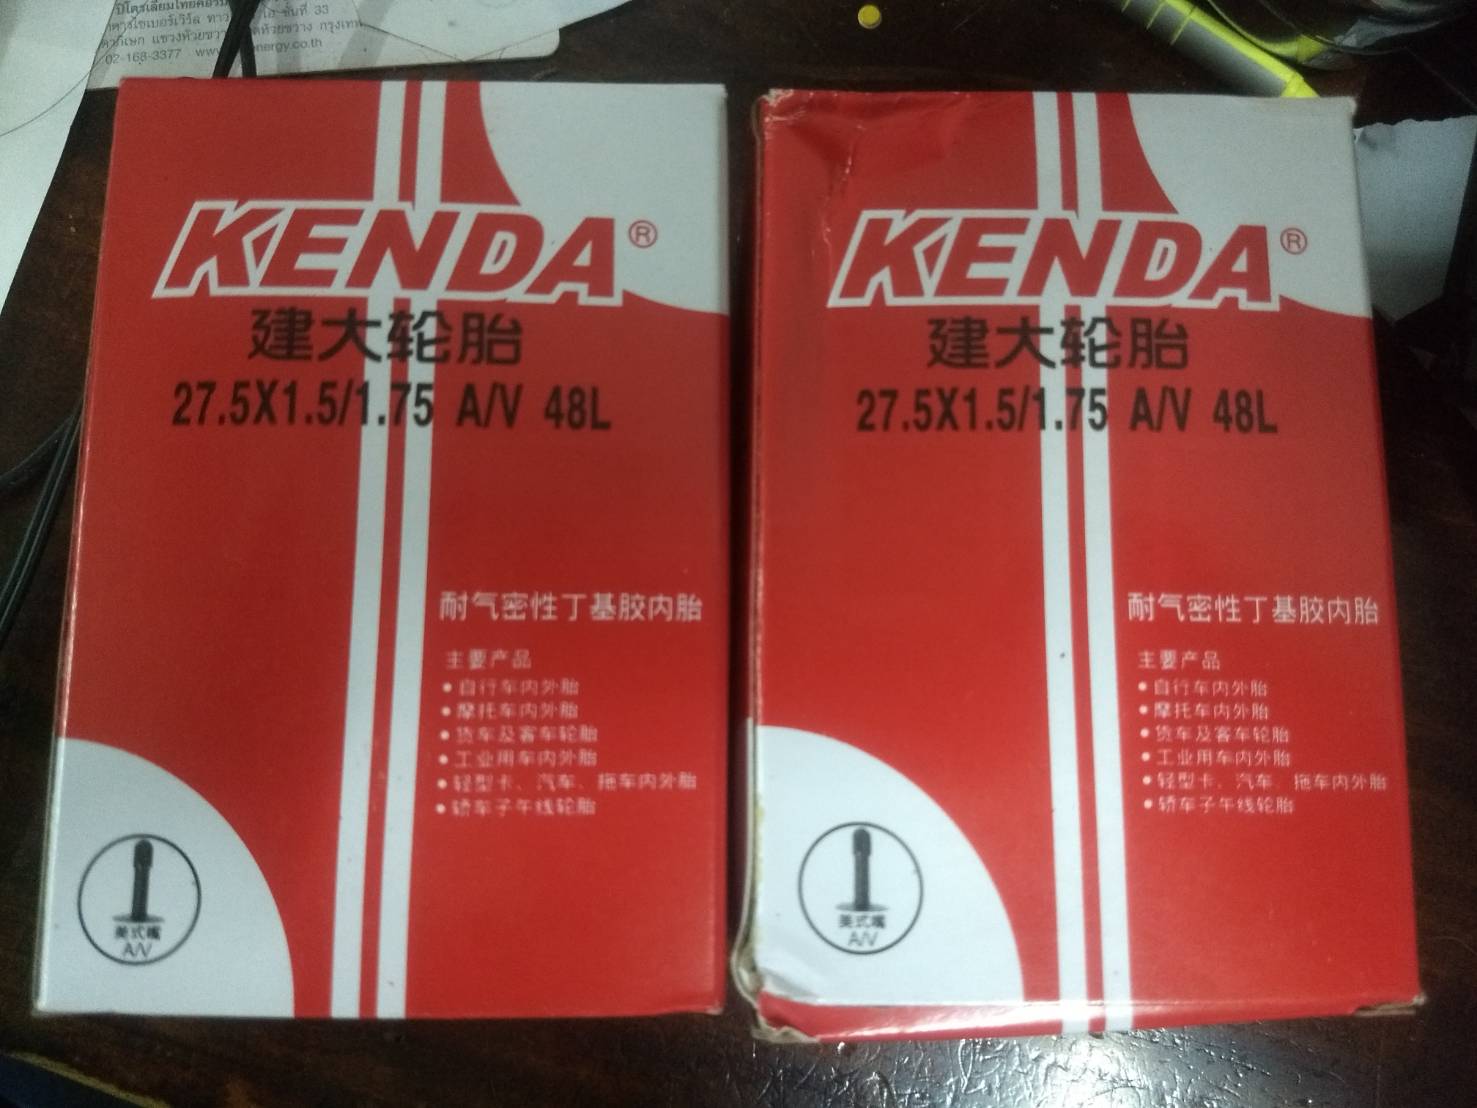 แพ็คคู่สุดคุ้ม!!! ยางใน kenda 27.5x1.5/1.75 AV48(จุ๊บใหญ่)  ซื้อครบ 500 บาทส่งฟรี